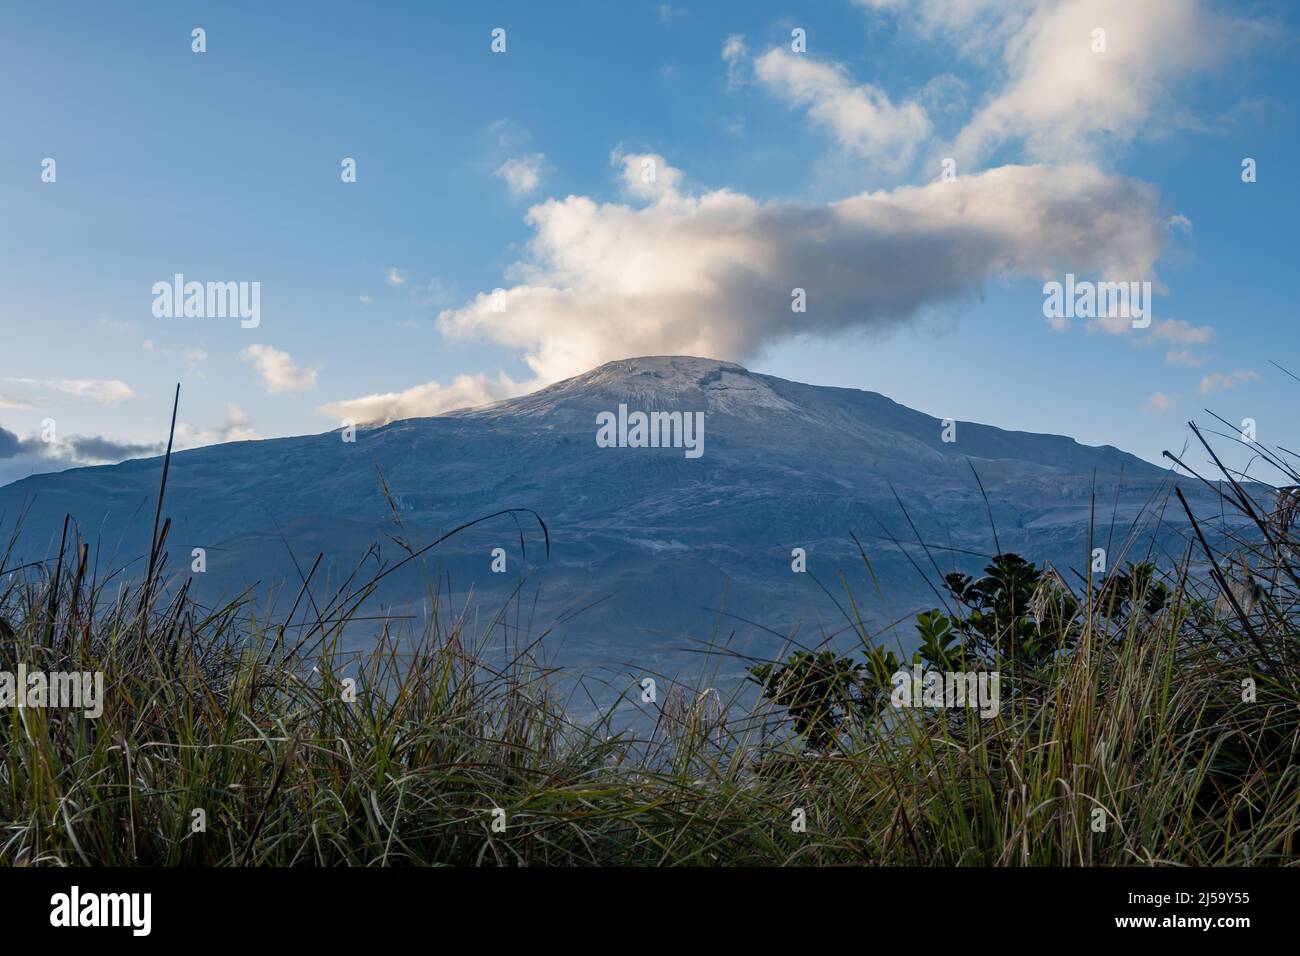 La fumée et la vapeur s'élèvent du volcan actif Nevado del Ruiz dans les montagnes centrales des Andes. Parc national de Los Nevados, Colombie, Amérique du Sud. Banque D'Images